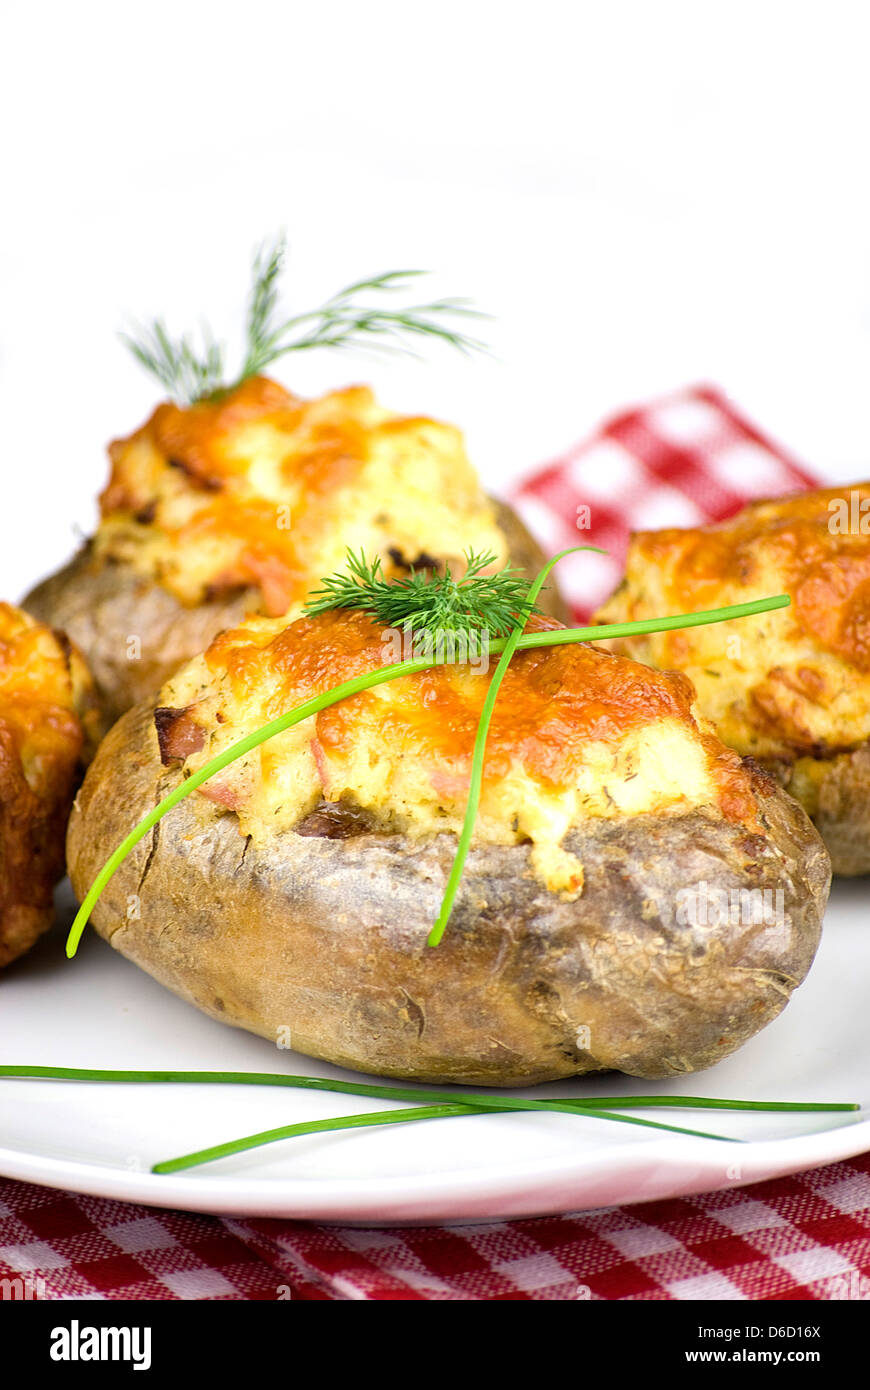 stuffed potatoes Stock Photo